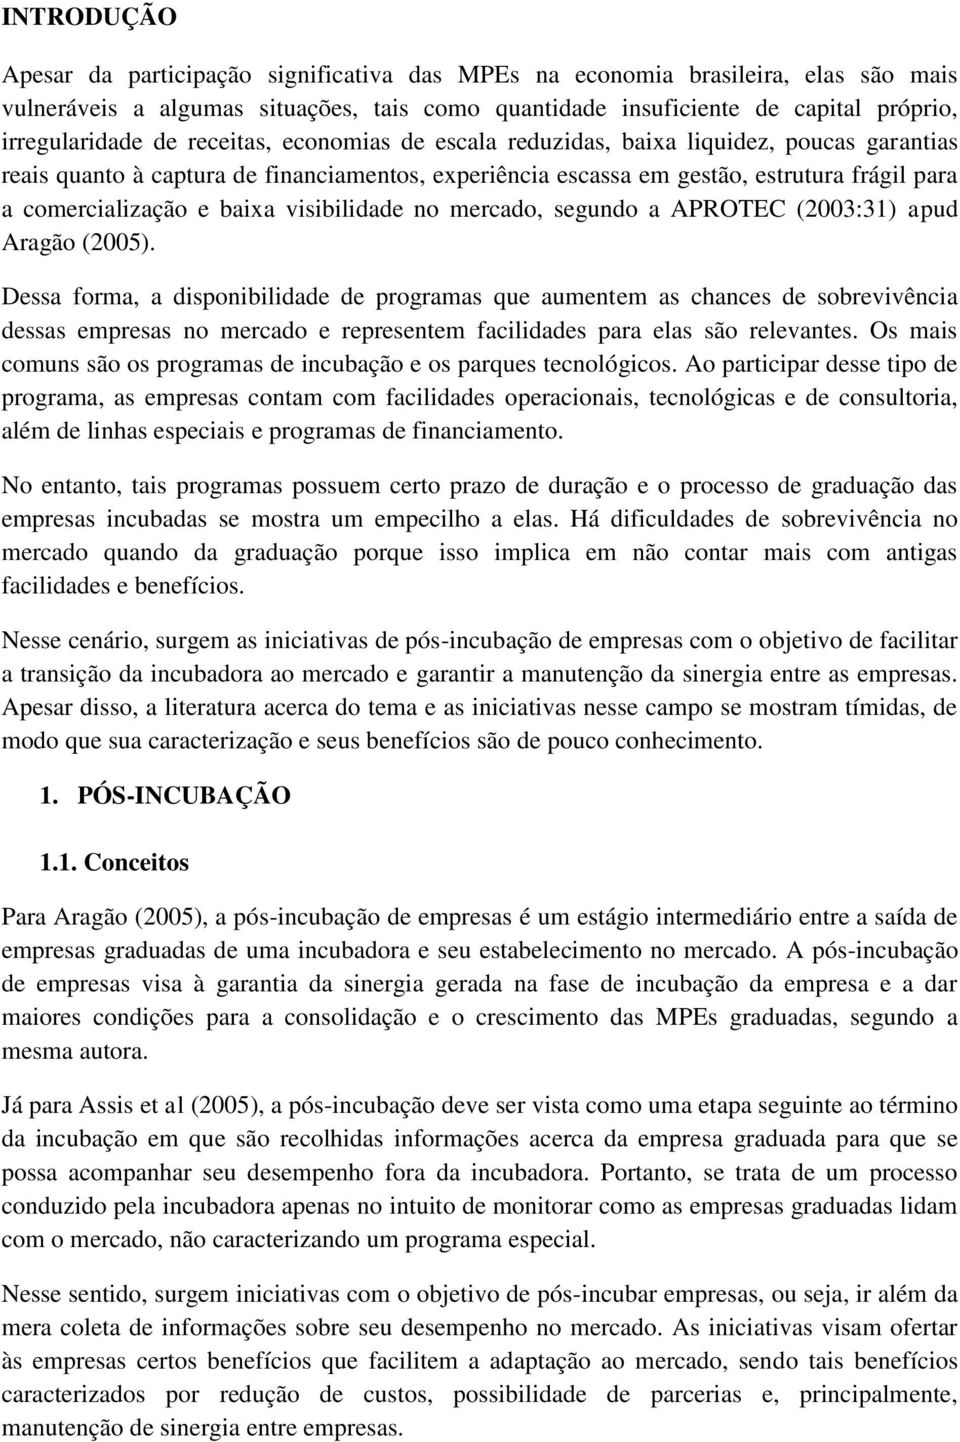 visibilidade no mercado, segundo a APROTEC (2003:31) apud Aragão (2005).